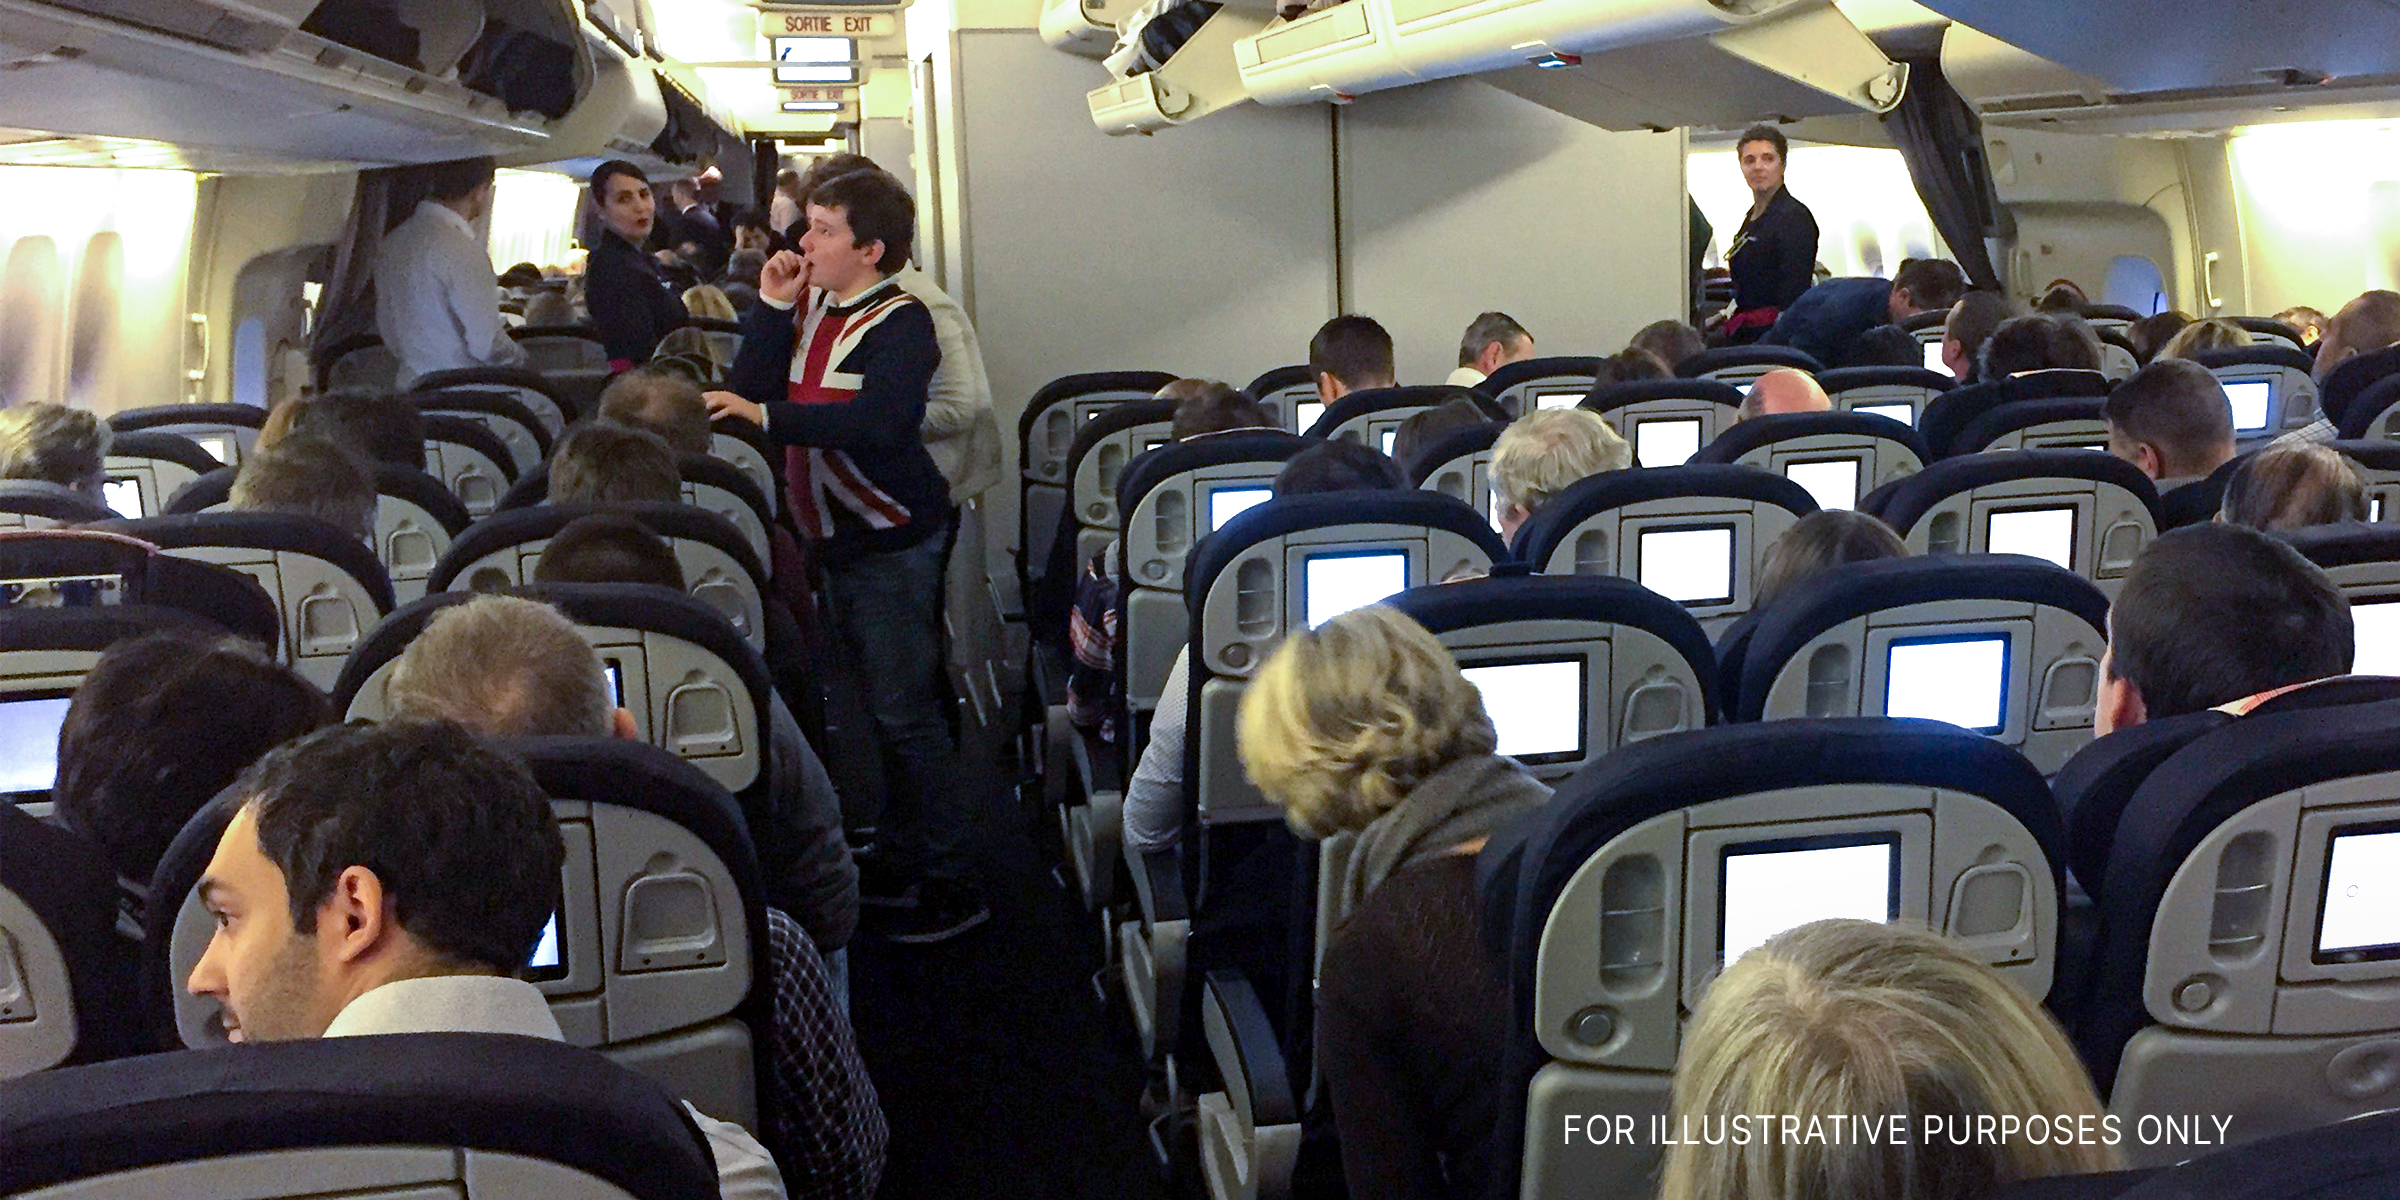 Die Innenkabine eines Flugzeugs, gefüllt mit Passagieren und Besatzung | Quelle: flickr.com/airlines470/CC BY-SA 2.0